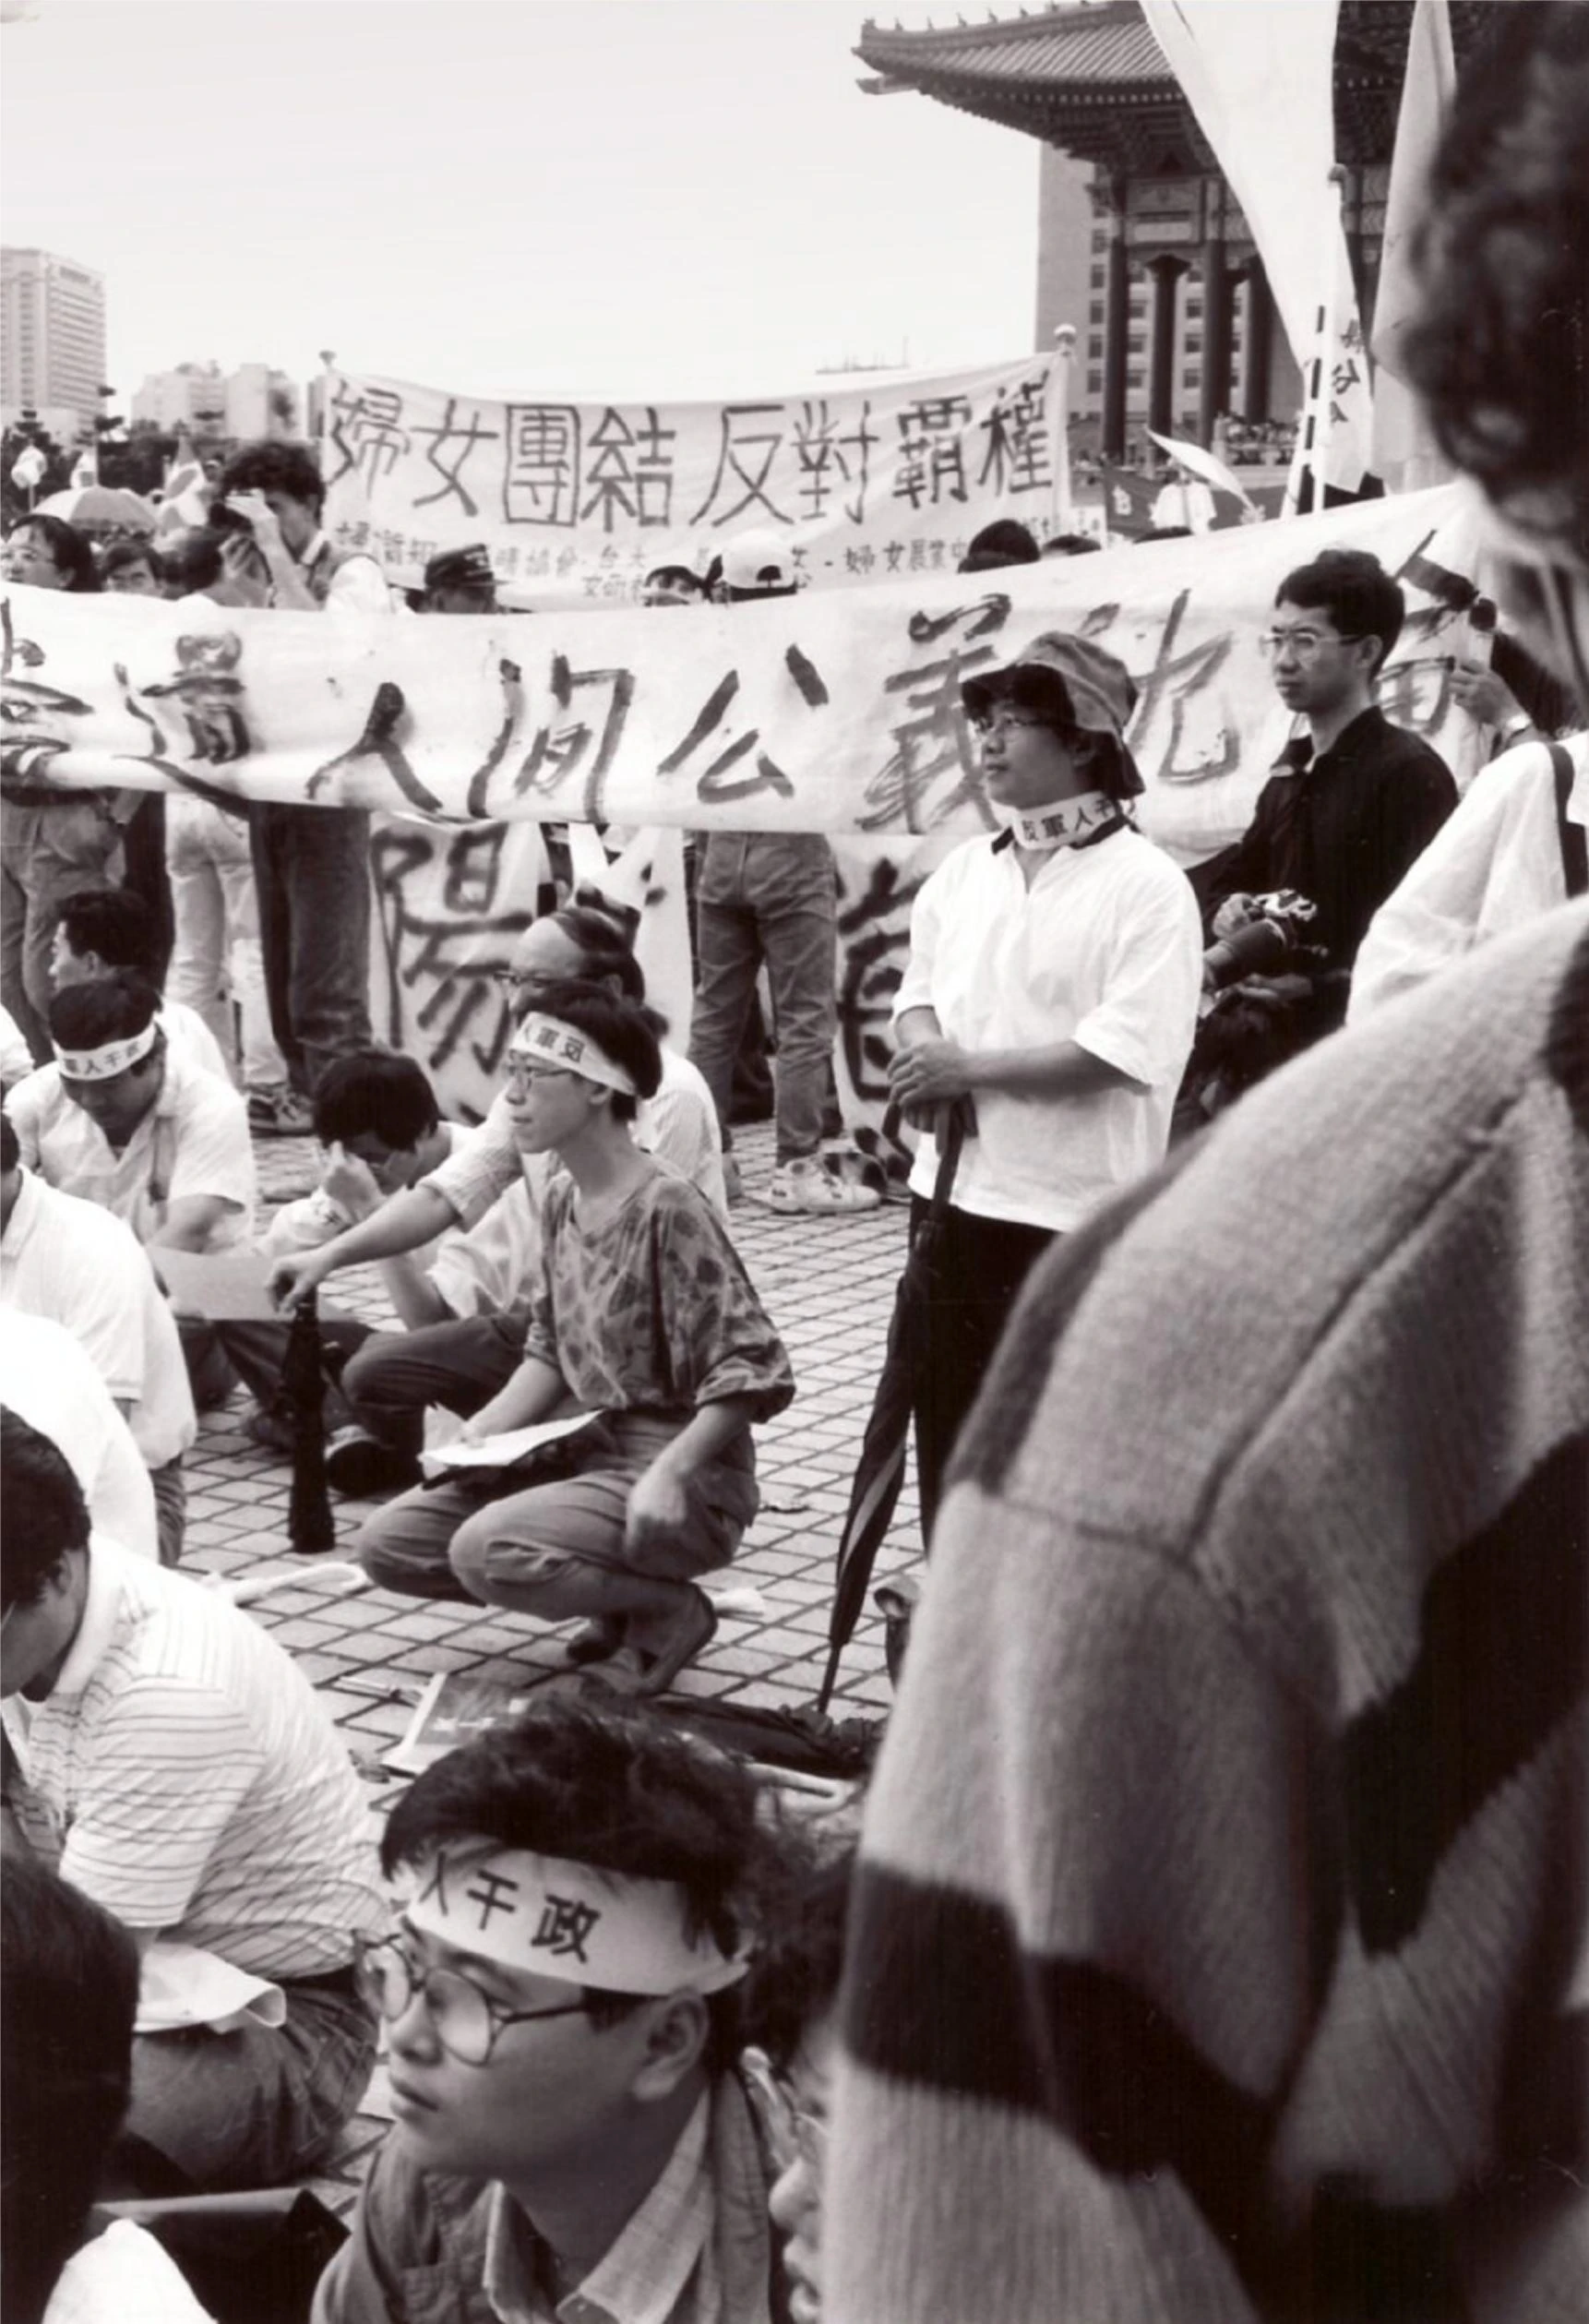 李銘盛和吳瑪悧參加「520」反軍人干政遊行，1990；Andreas Meyn攝影 ©吳瑪悧提供-圖片